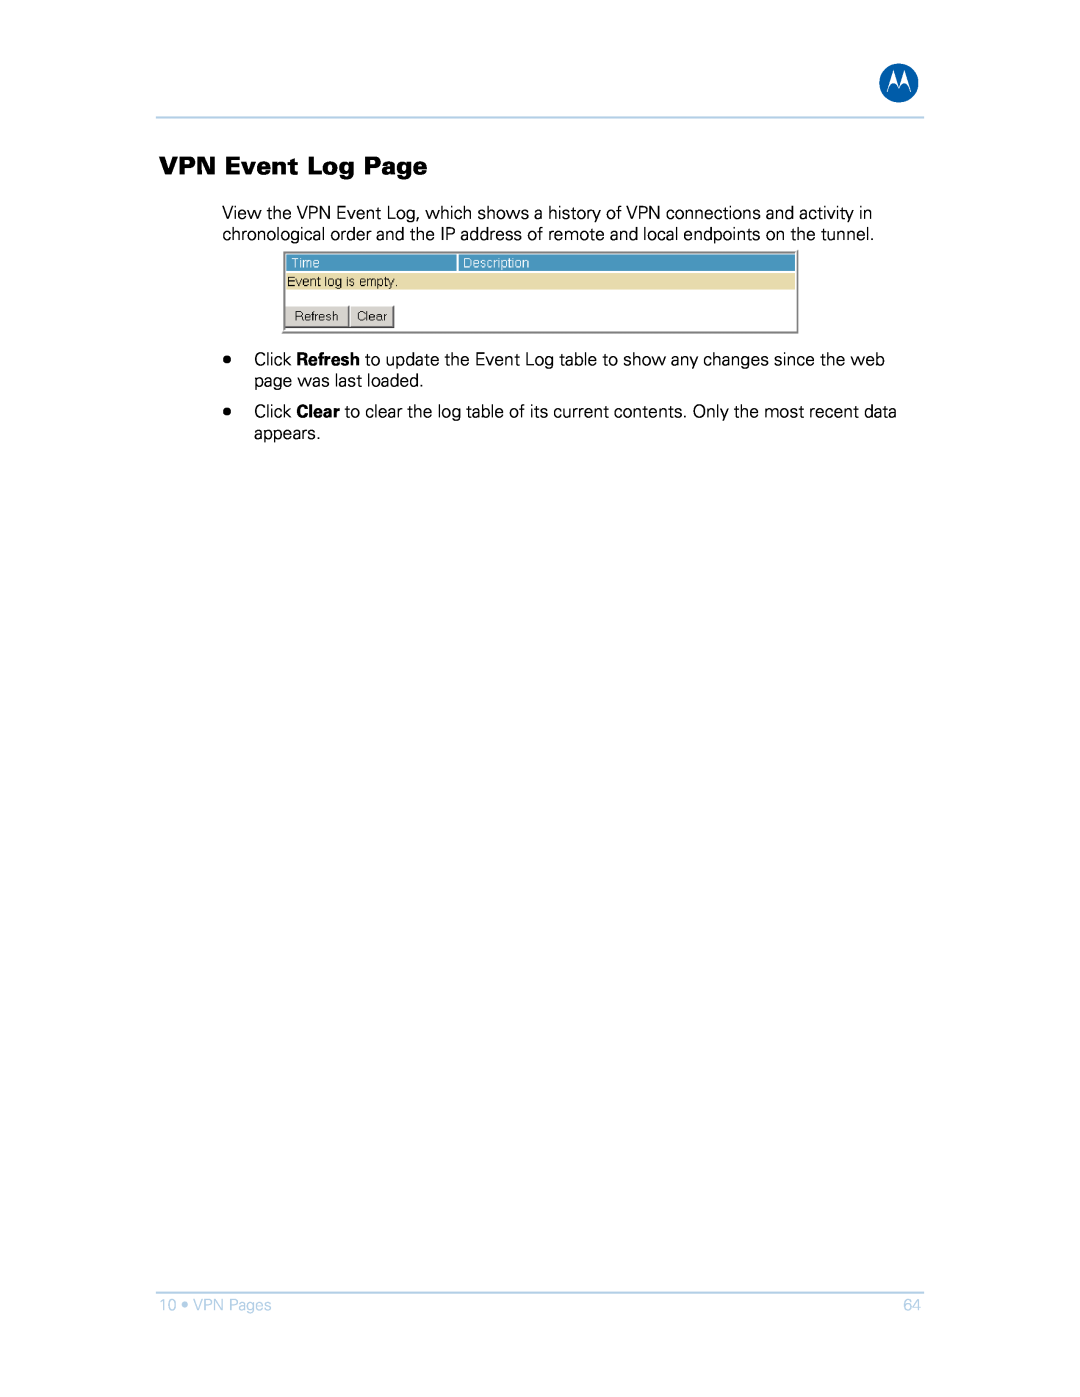 Motorola SVG1501UE, SVG1501E manual VPN Event Log Page 